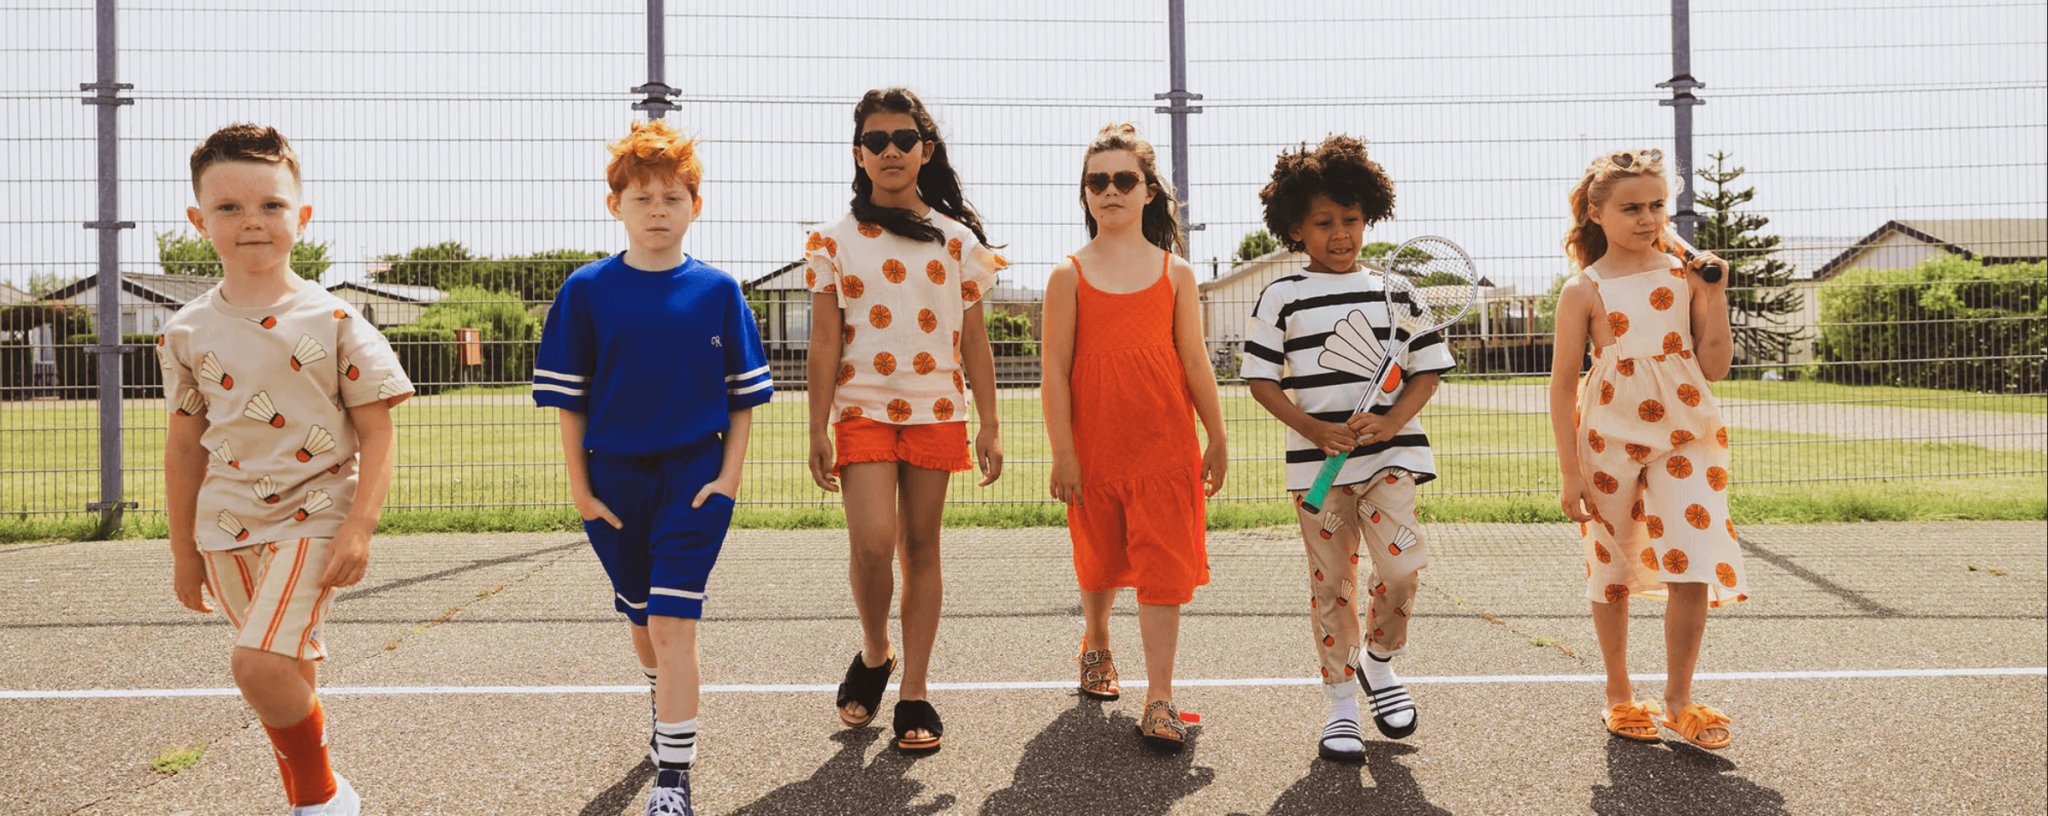 10 marcas de ropa infantil que marcan la diferencia – PetitGegant